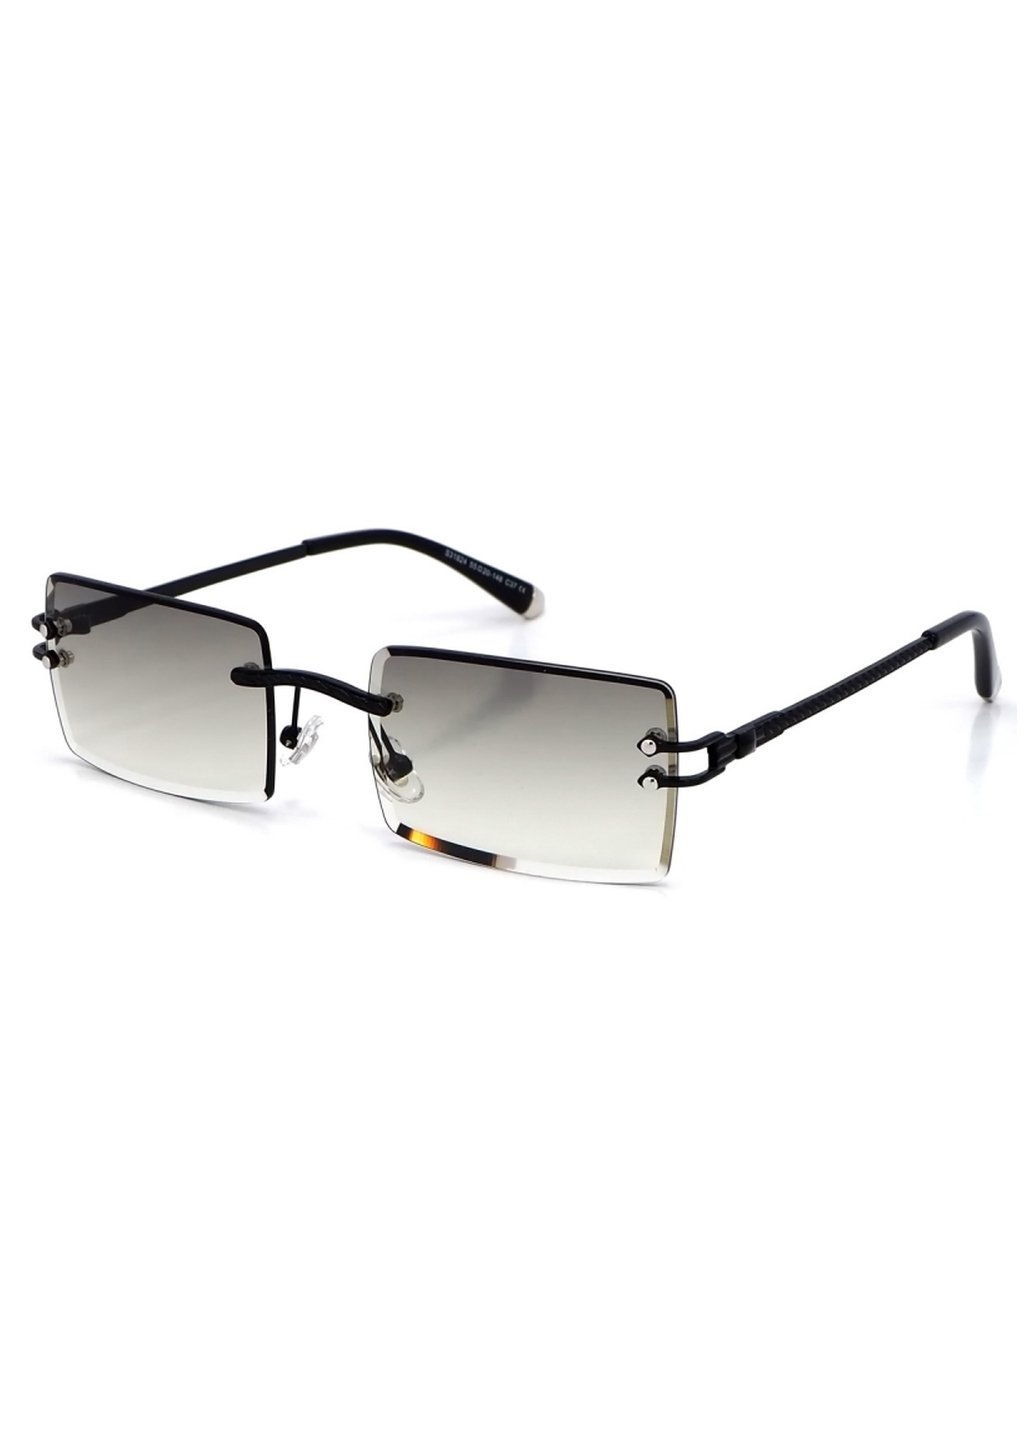 Купить Женские солнцезащитные очки Merlini с поляризацией S31824 117074 - Черный в интернет-магазине